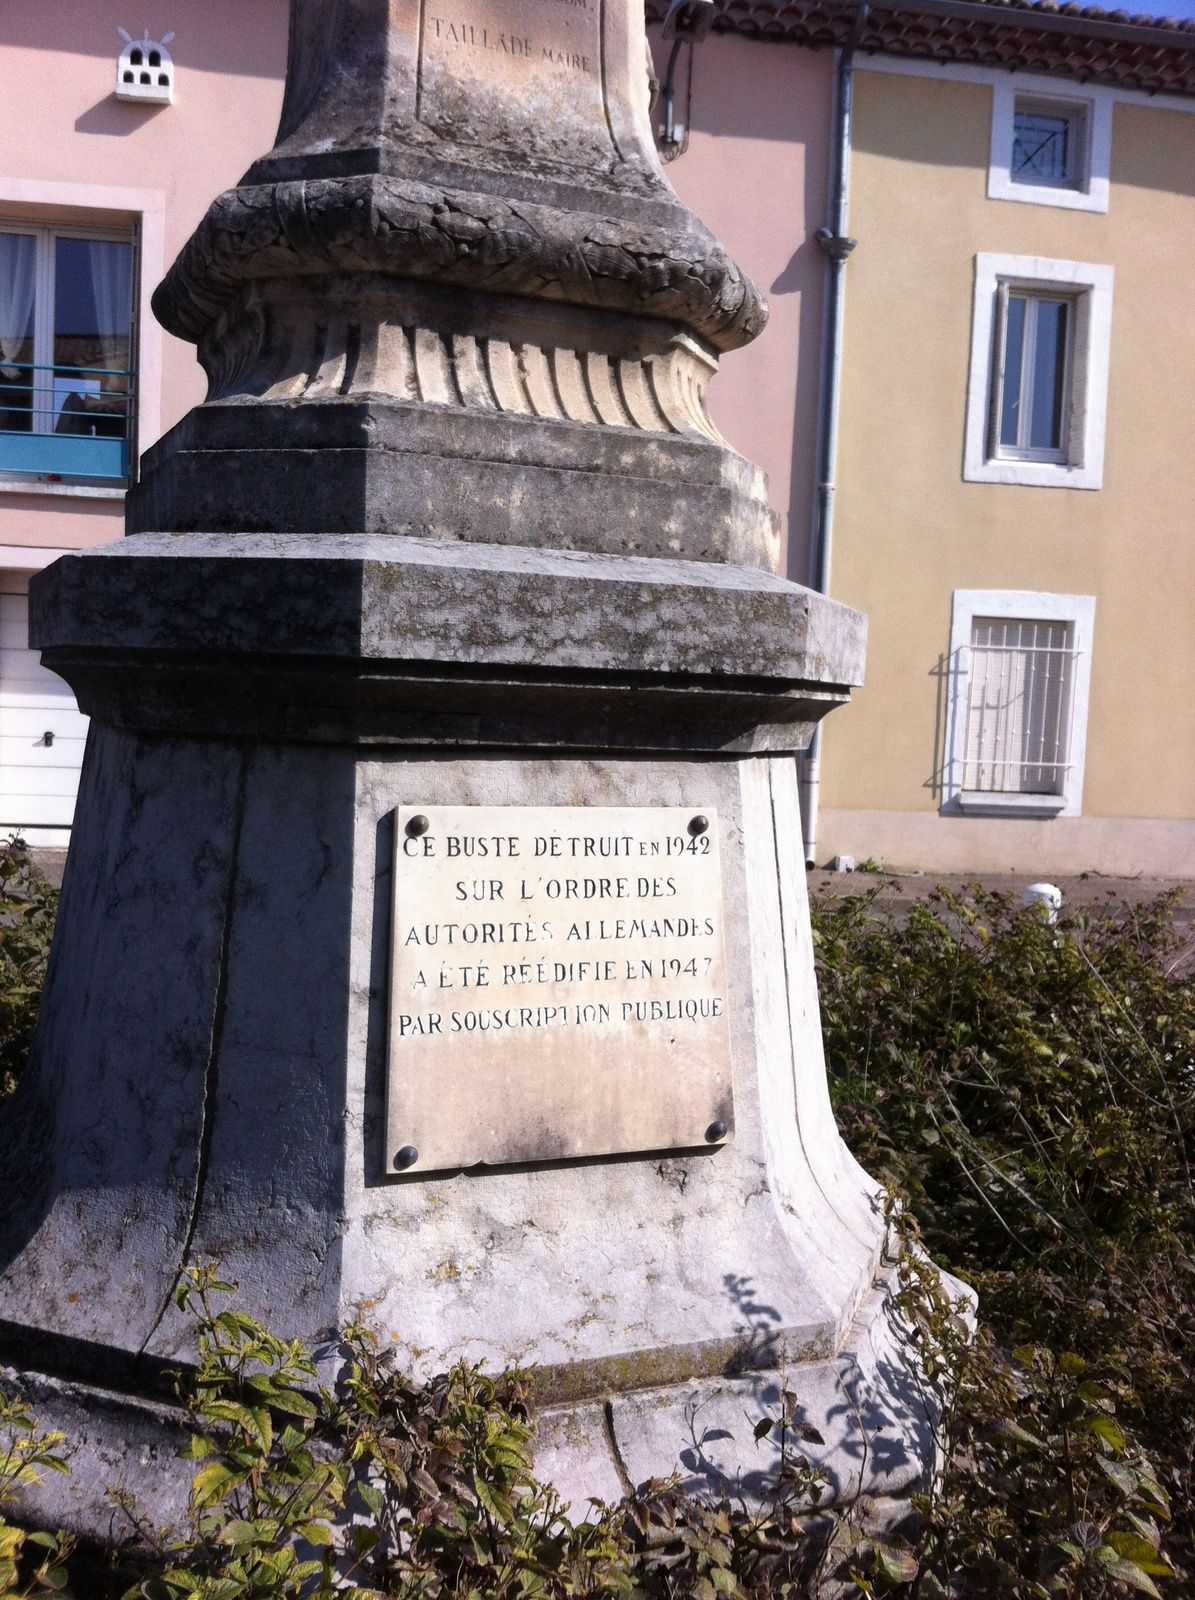 Ce buste détruit en 1942 sur l'ordre des autorités Allemandes a été réédifié en 1947 par souscription public